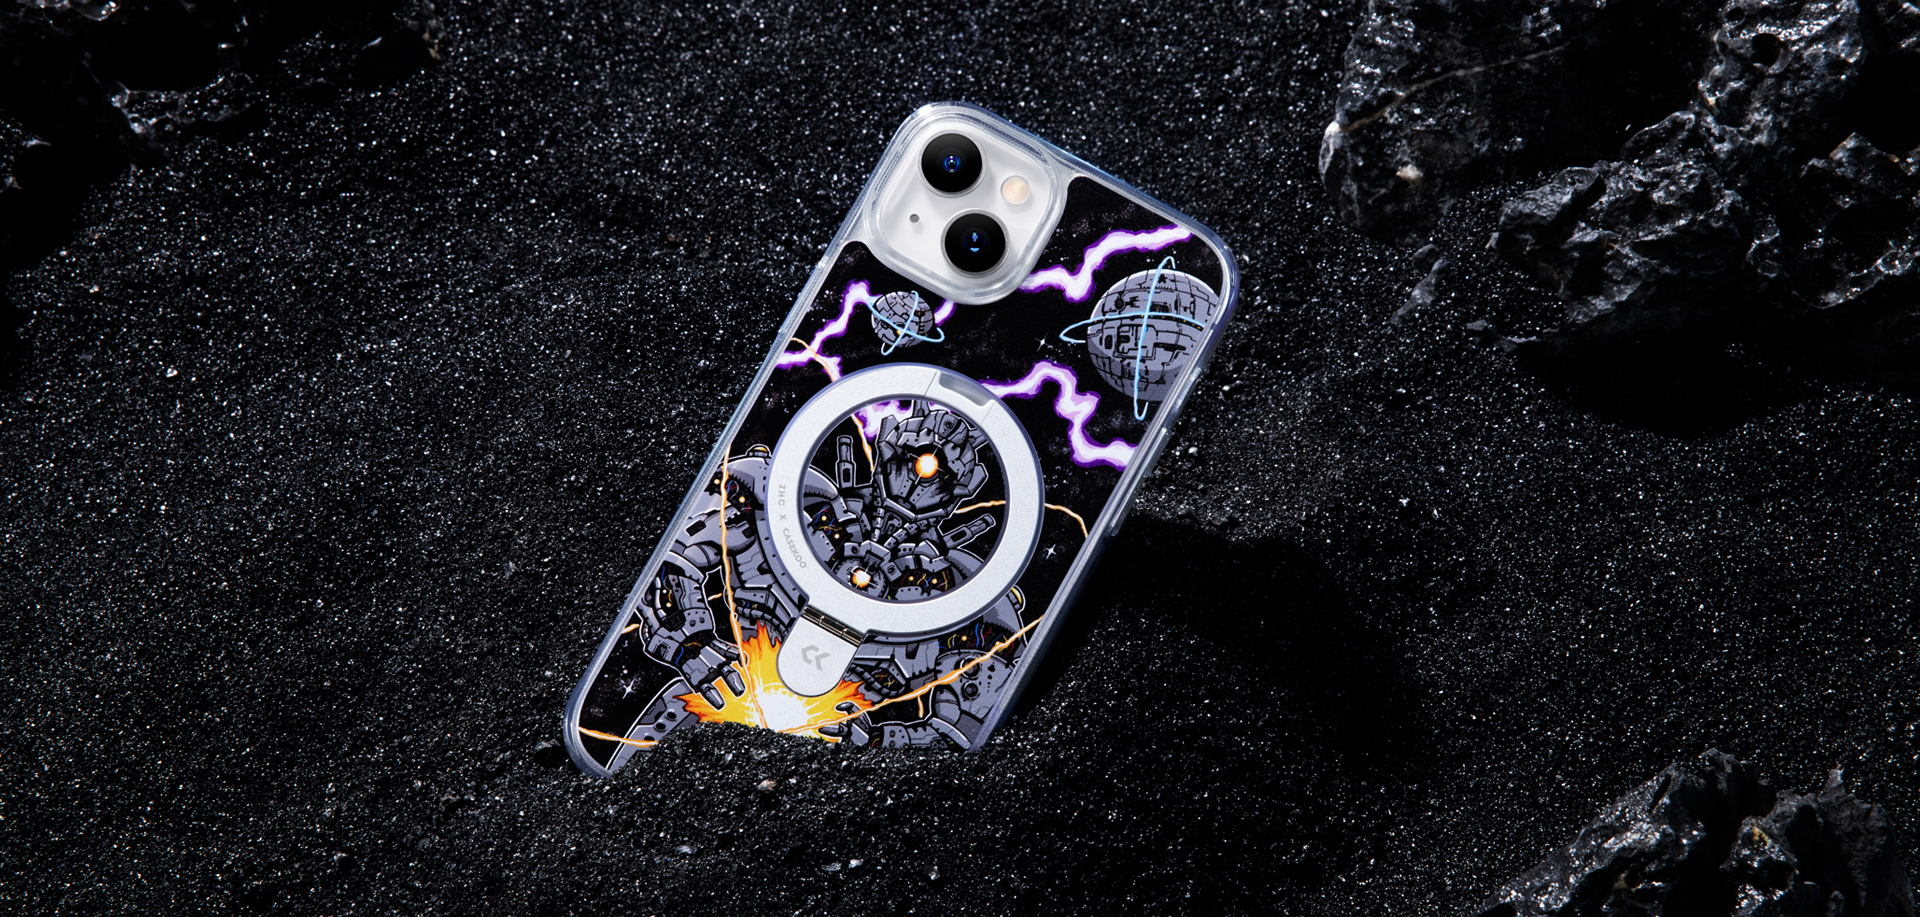 CASEKOO iPhone Space Titan Graffiti Phone Case 内蔵磁気キック 